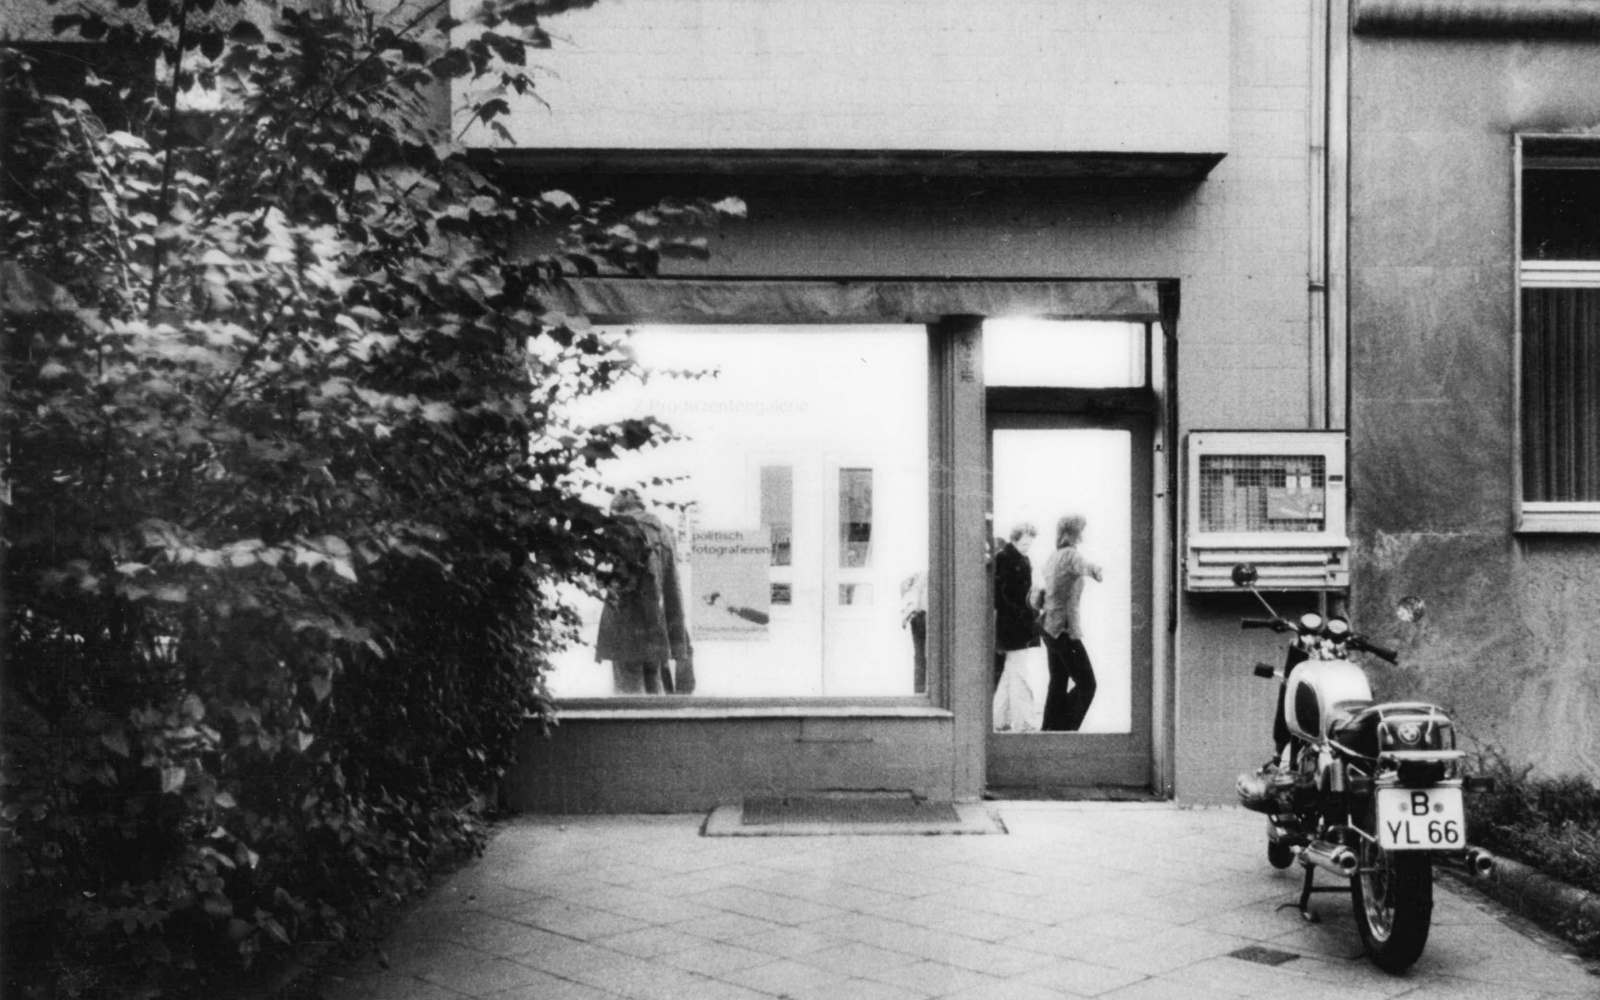 Schwarz-weiß Foto zeigt die Straßenansicht eines Galerieraum. Davor steht ein Motorrad.